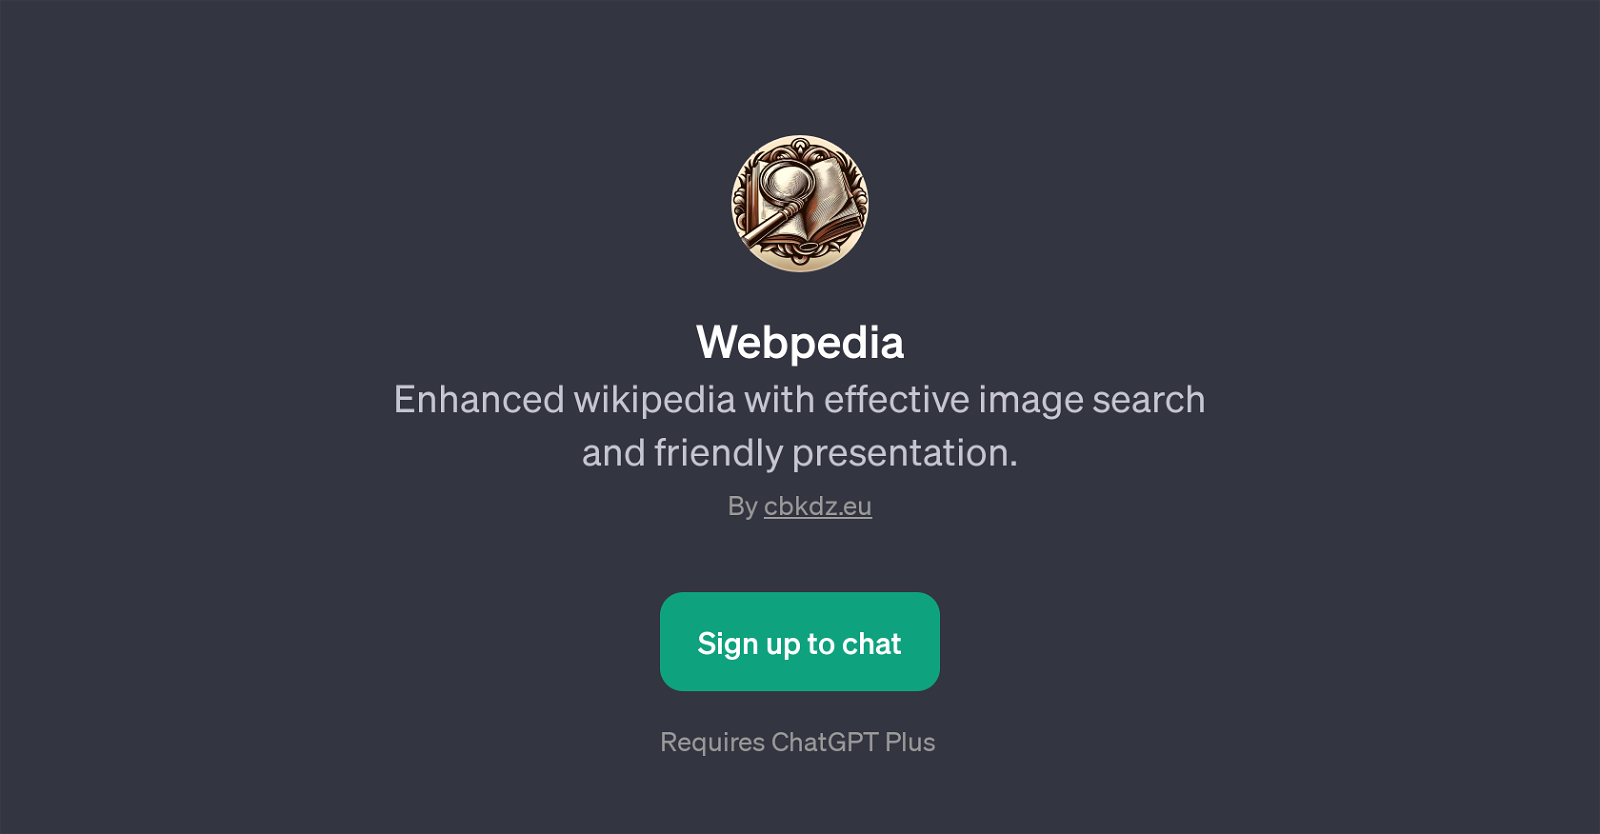 Webpedia website